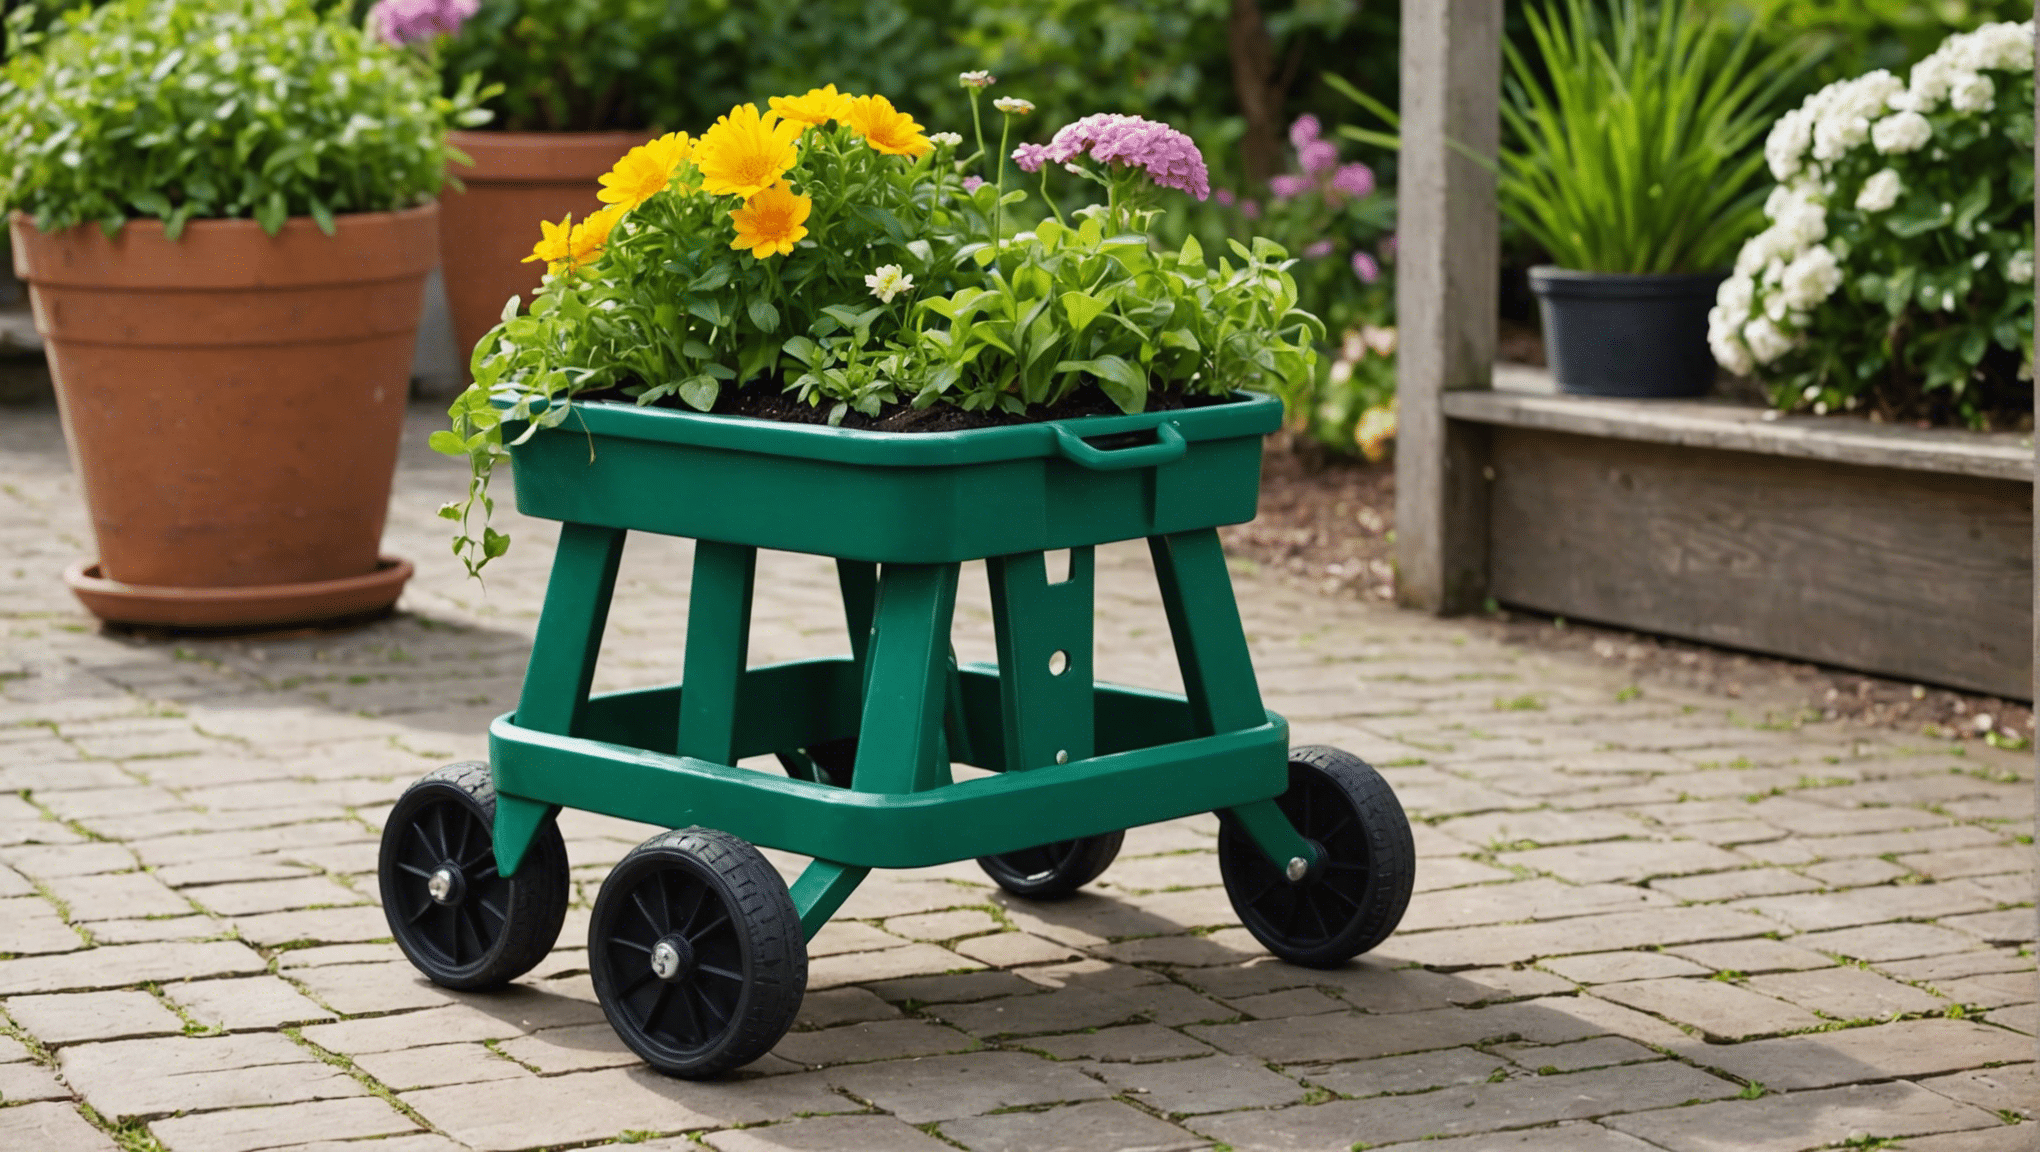 odkryj zalety stołków ogrodniczych na kółkach i przekonaj się, czy są one opłacalną inwestycją dla Twoich potrzeb ogrodniczych.